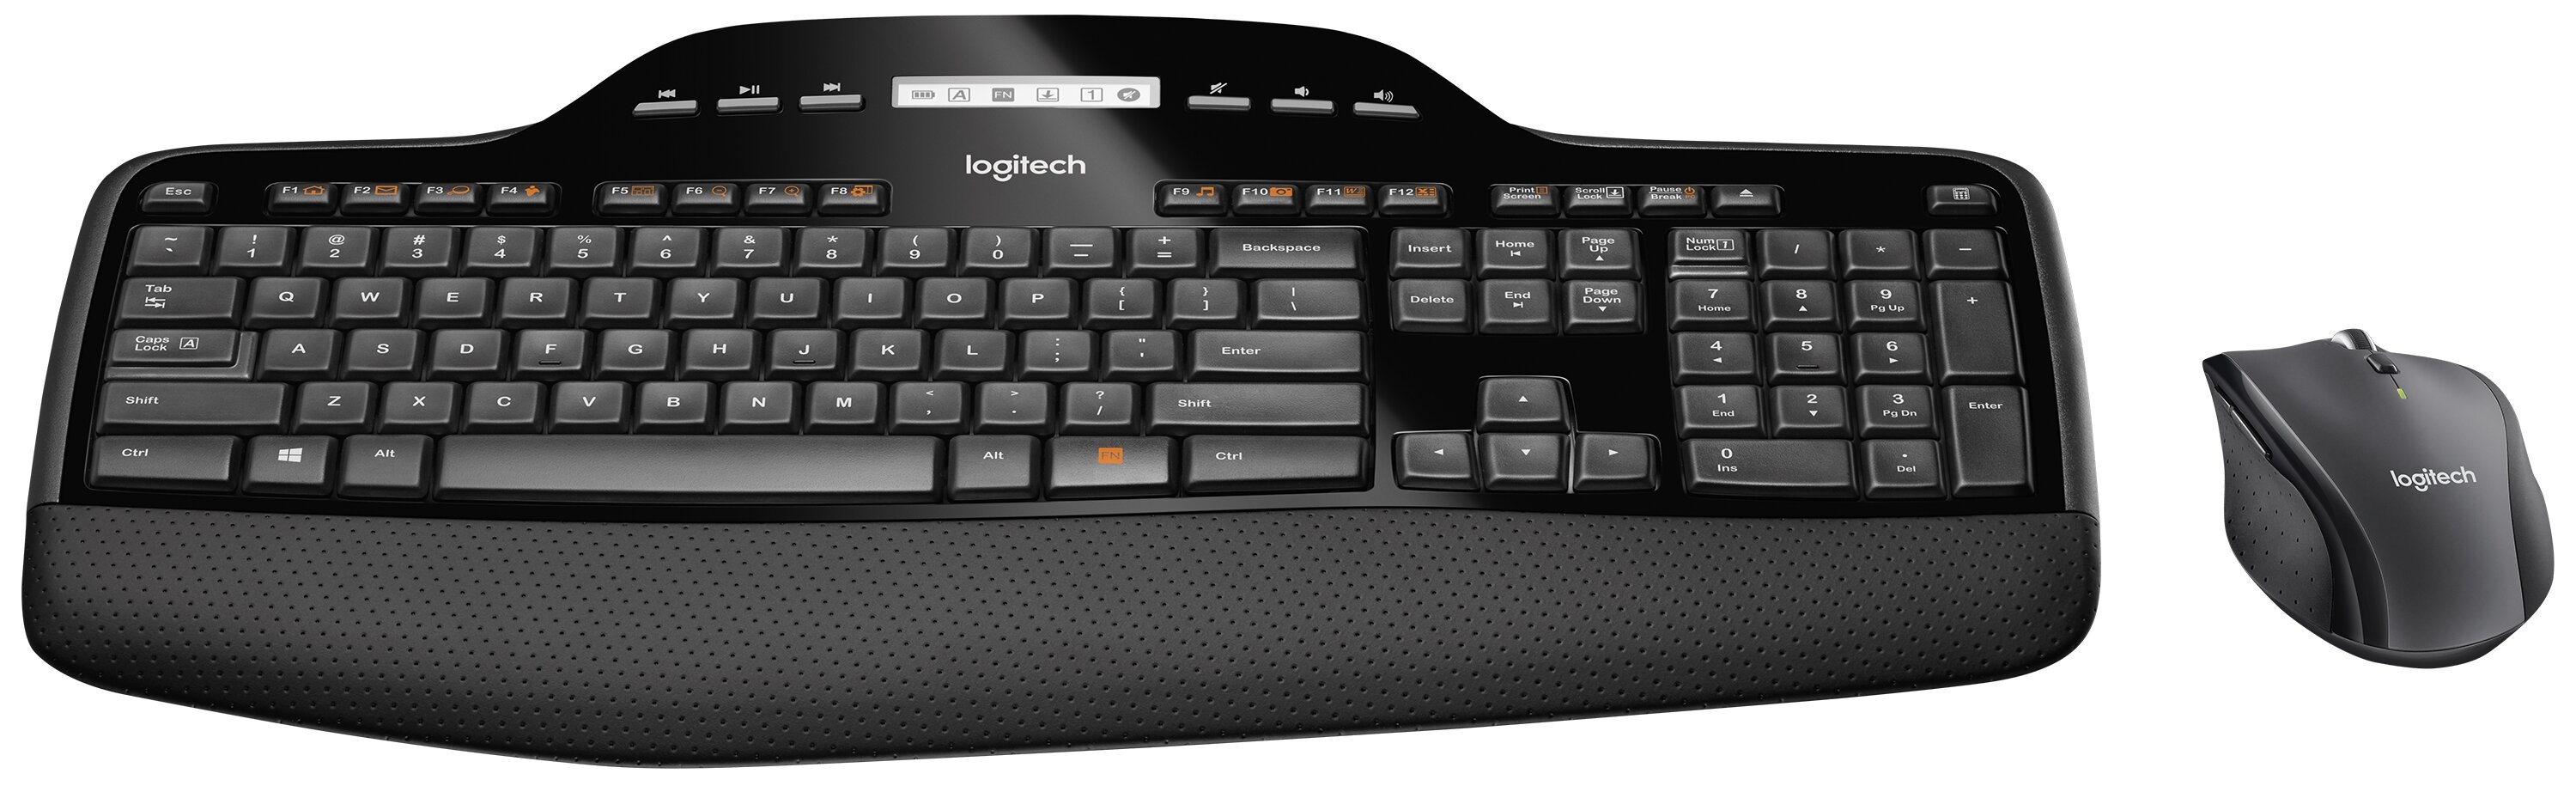 Logitech Wireless Desktop MK710 Keyboard & Mouse 